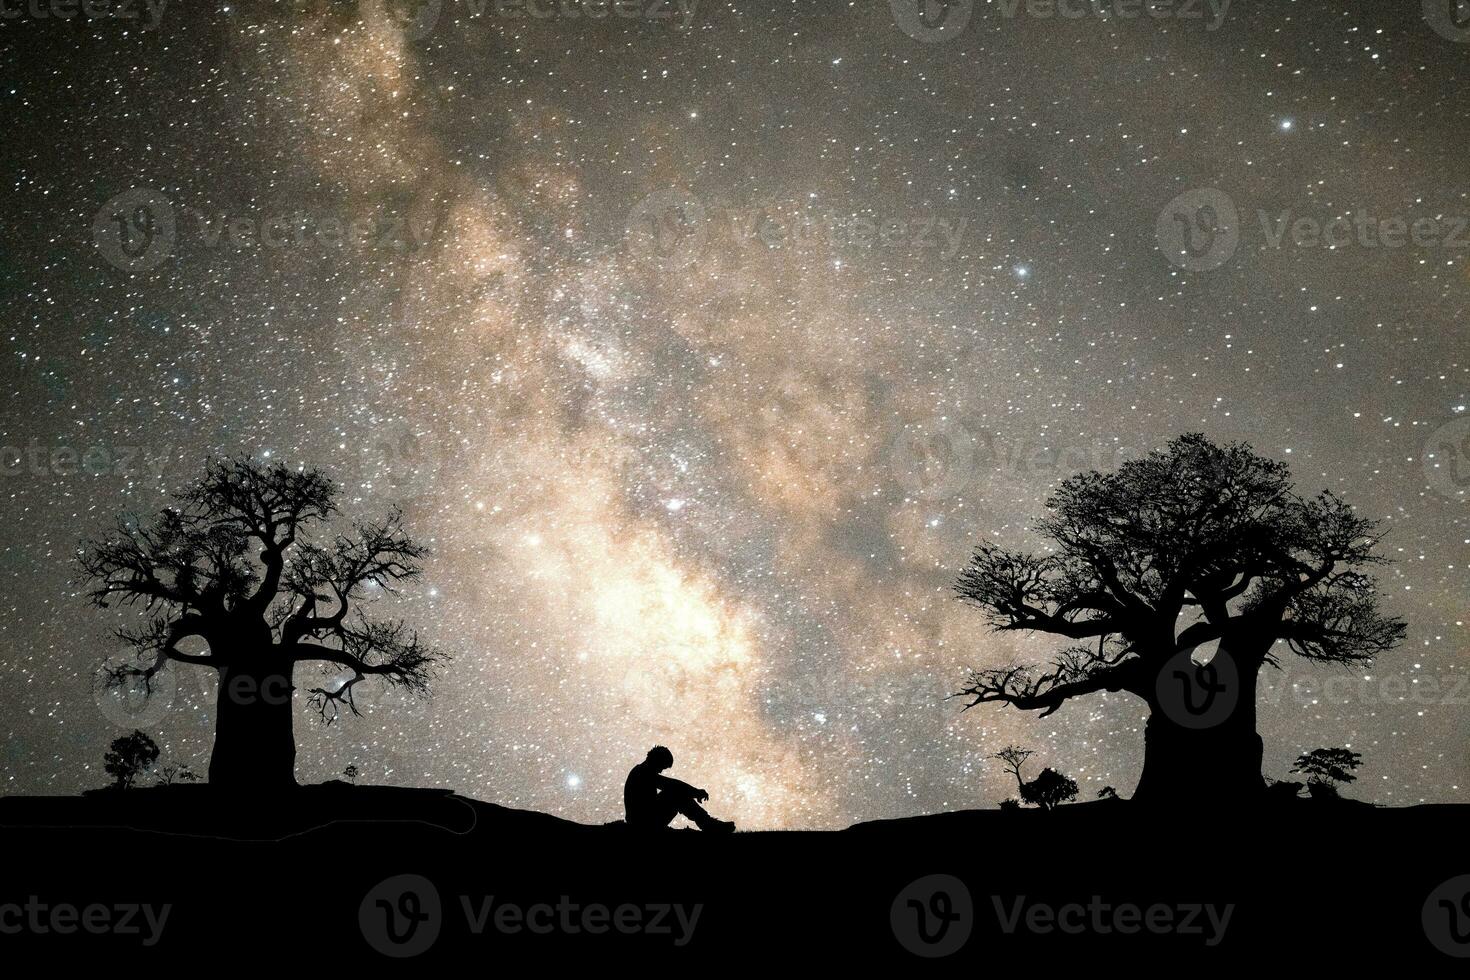 solitario hombre, desesperanzado, desconsolado a noche, el lechoso camino y el estrellas son hermosa. foto